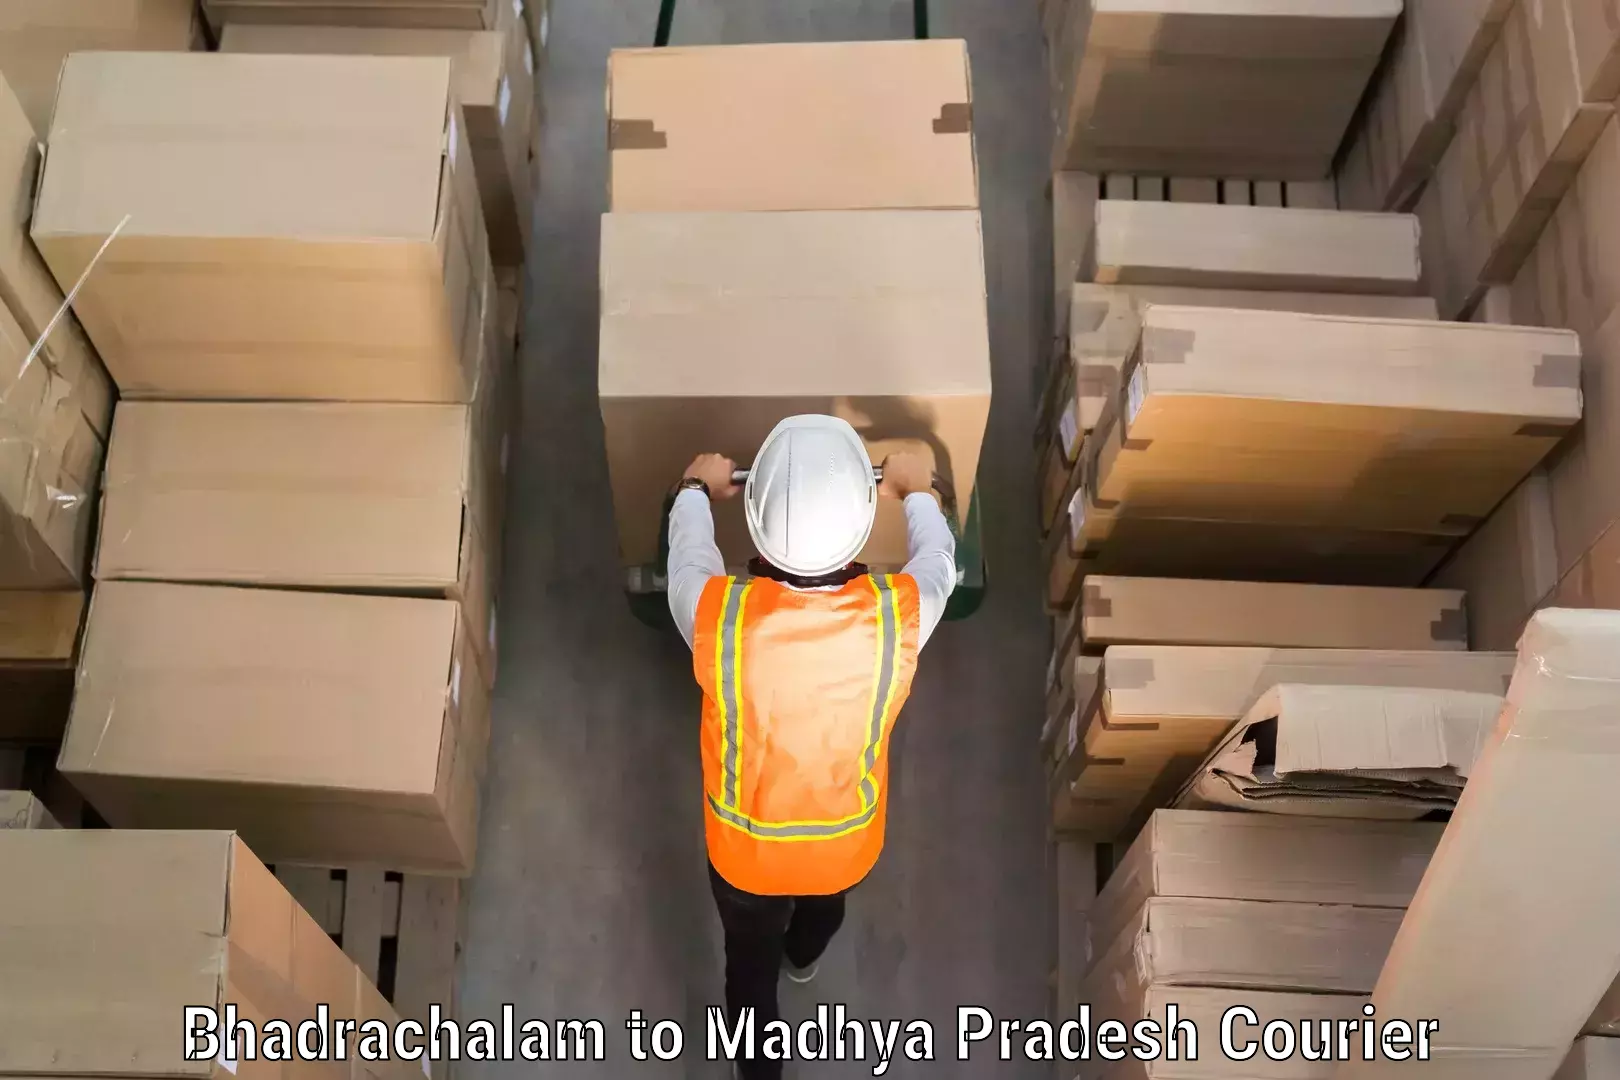 Door-to-door baggage service Bhadrachalam to Nagda